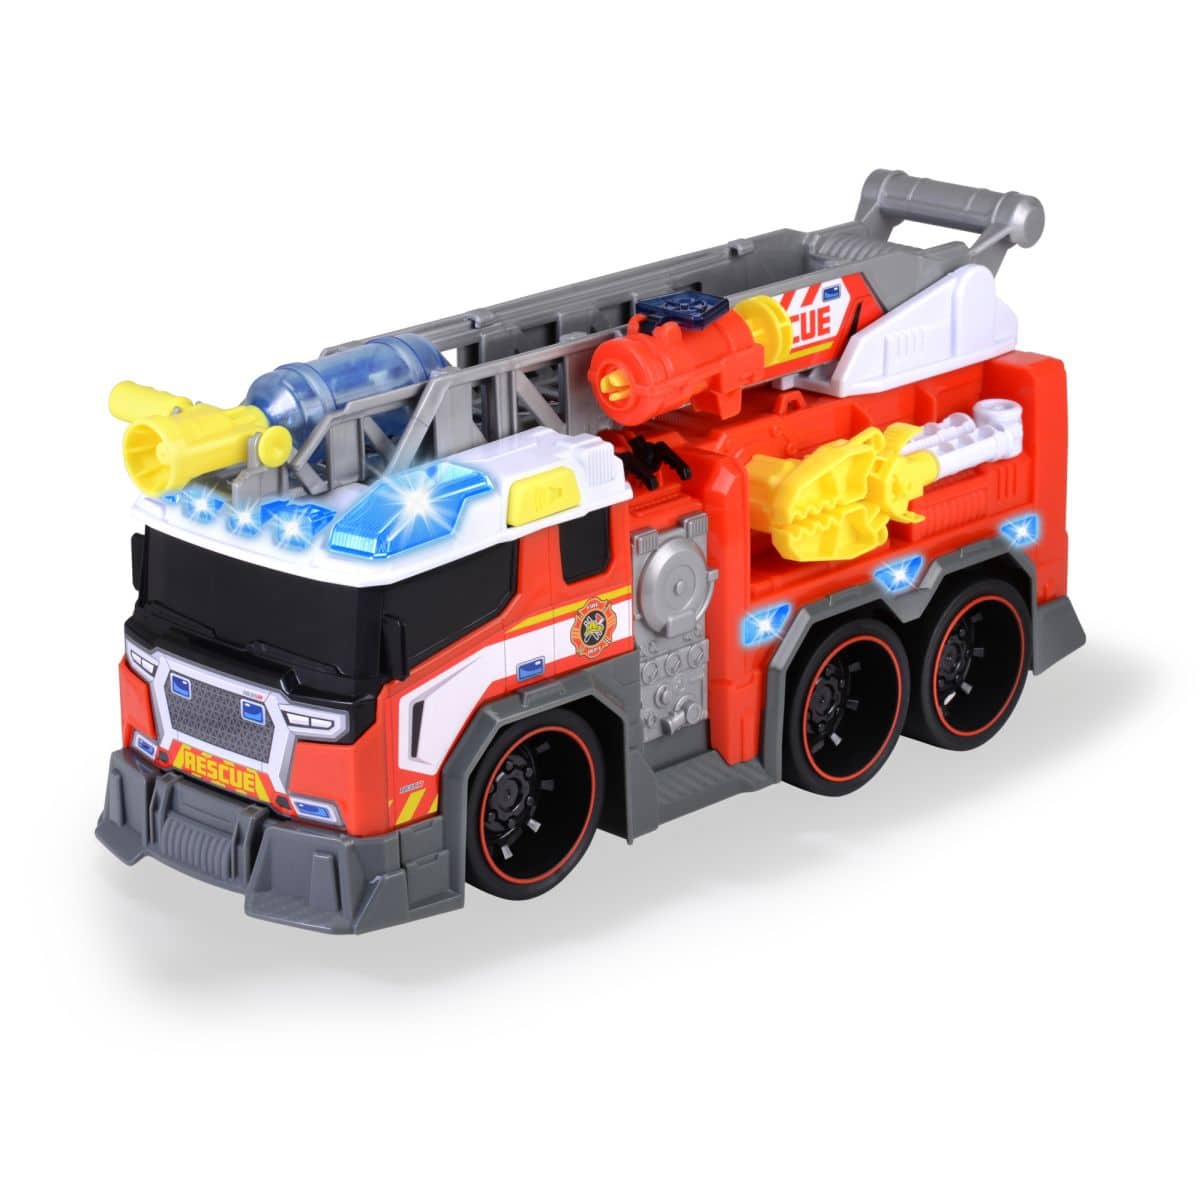 Fire Fighter - Feuerwehrauto